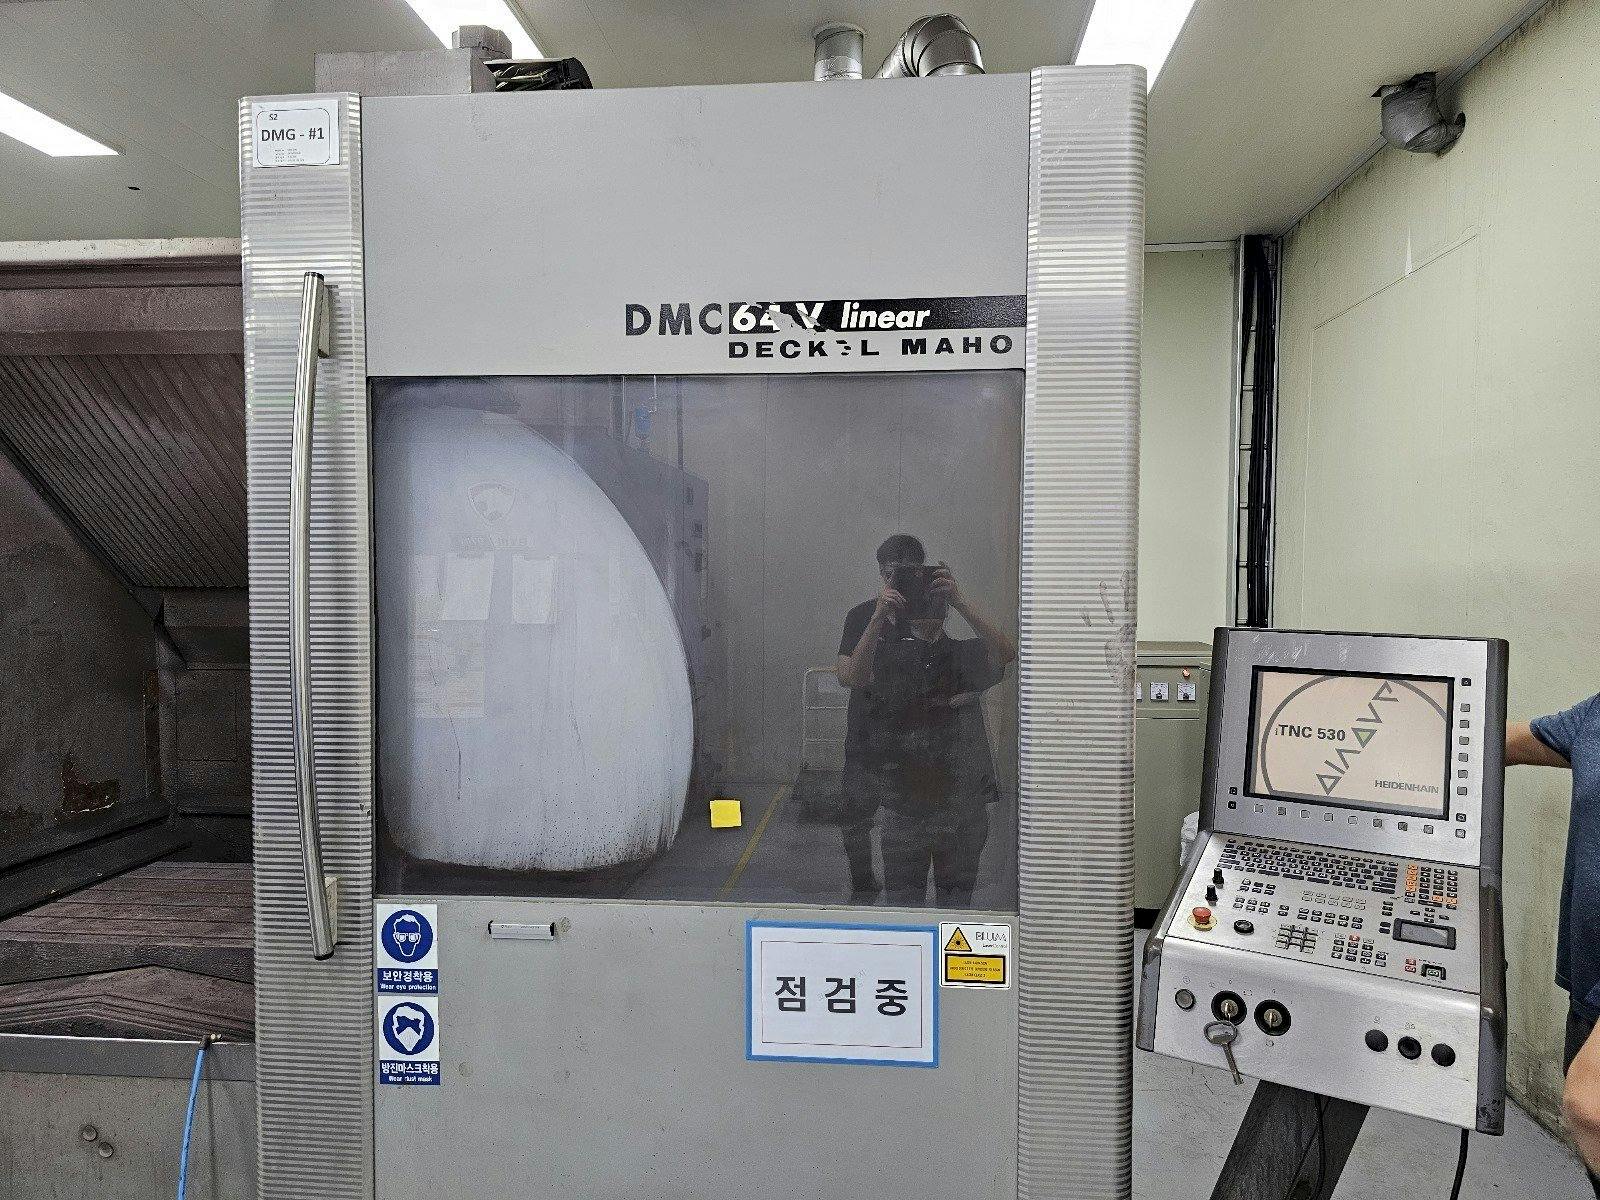 DECKEL MAHO DMC 64V linear-maskinen framifrån